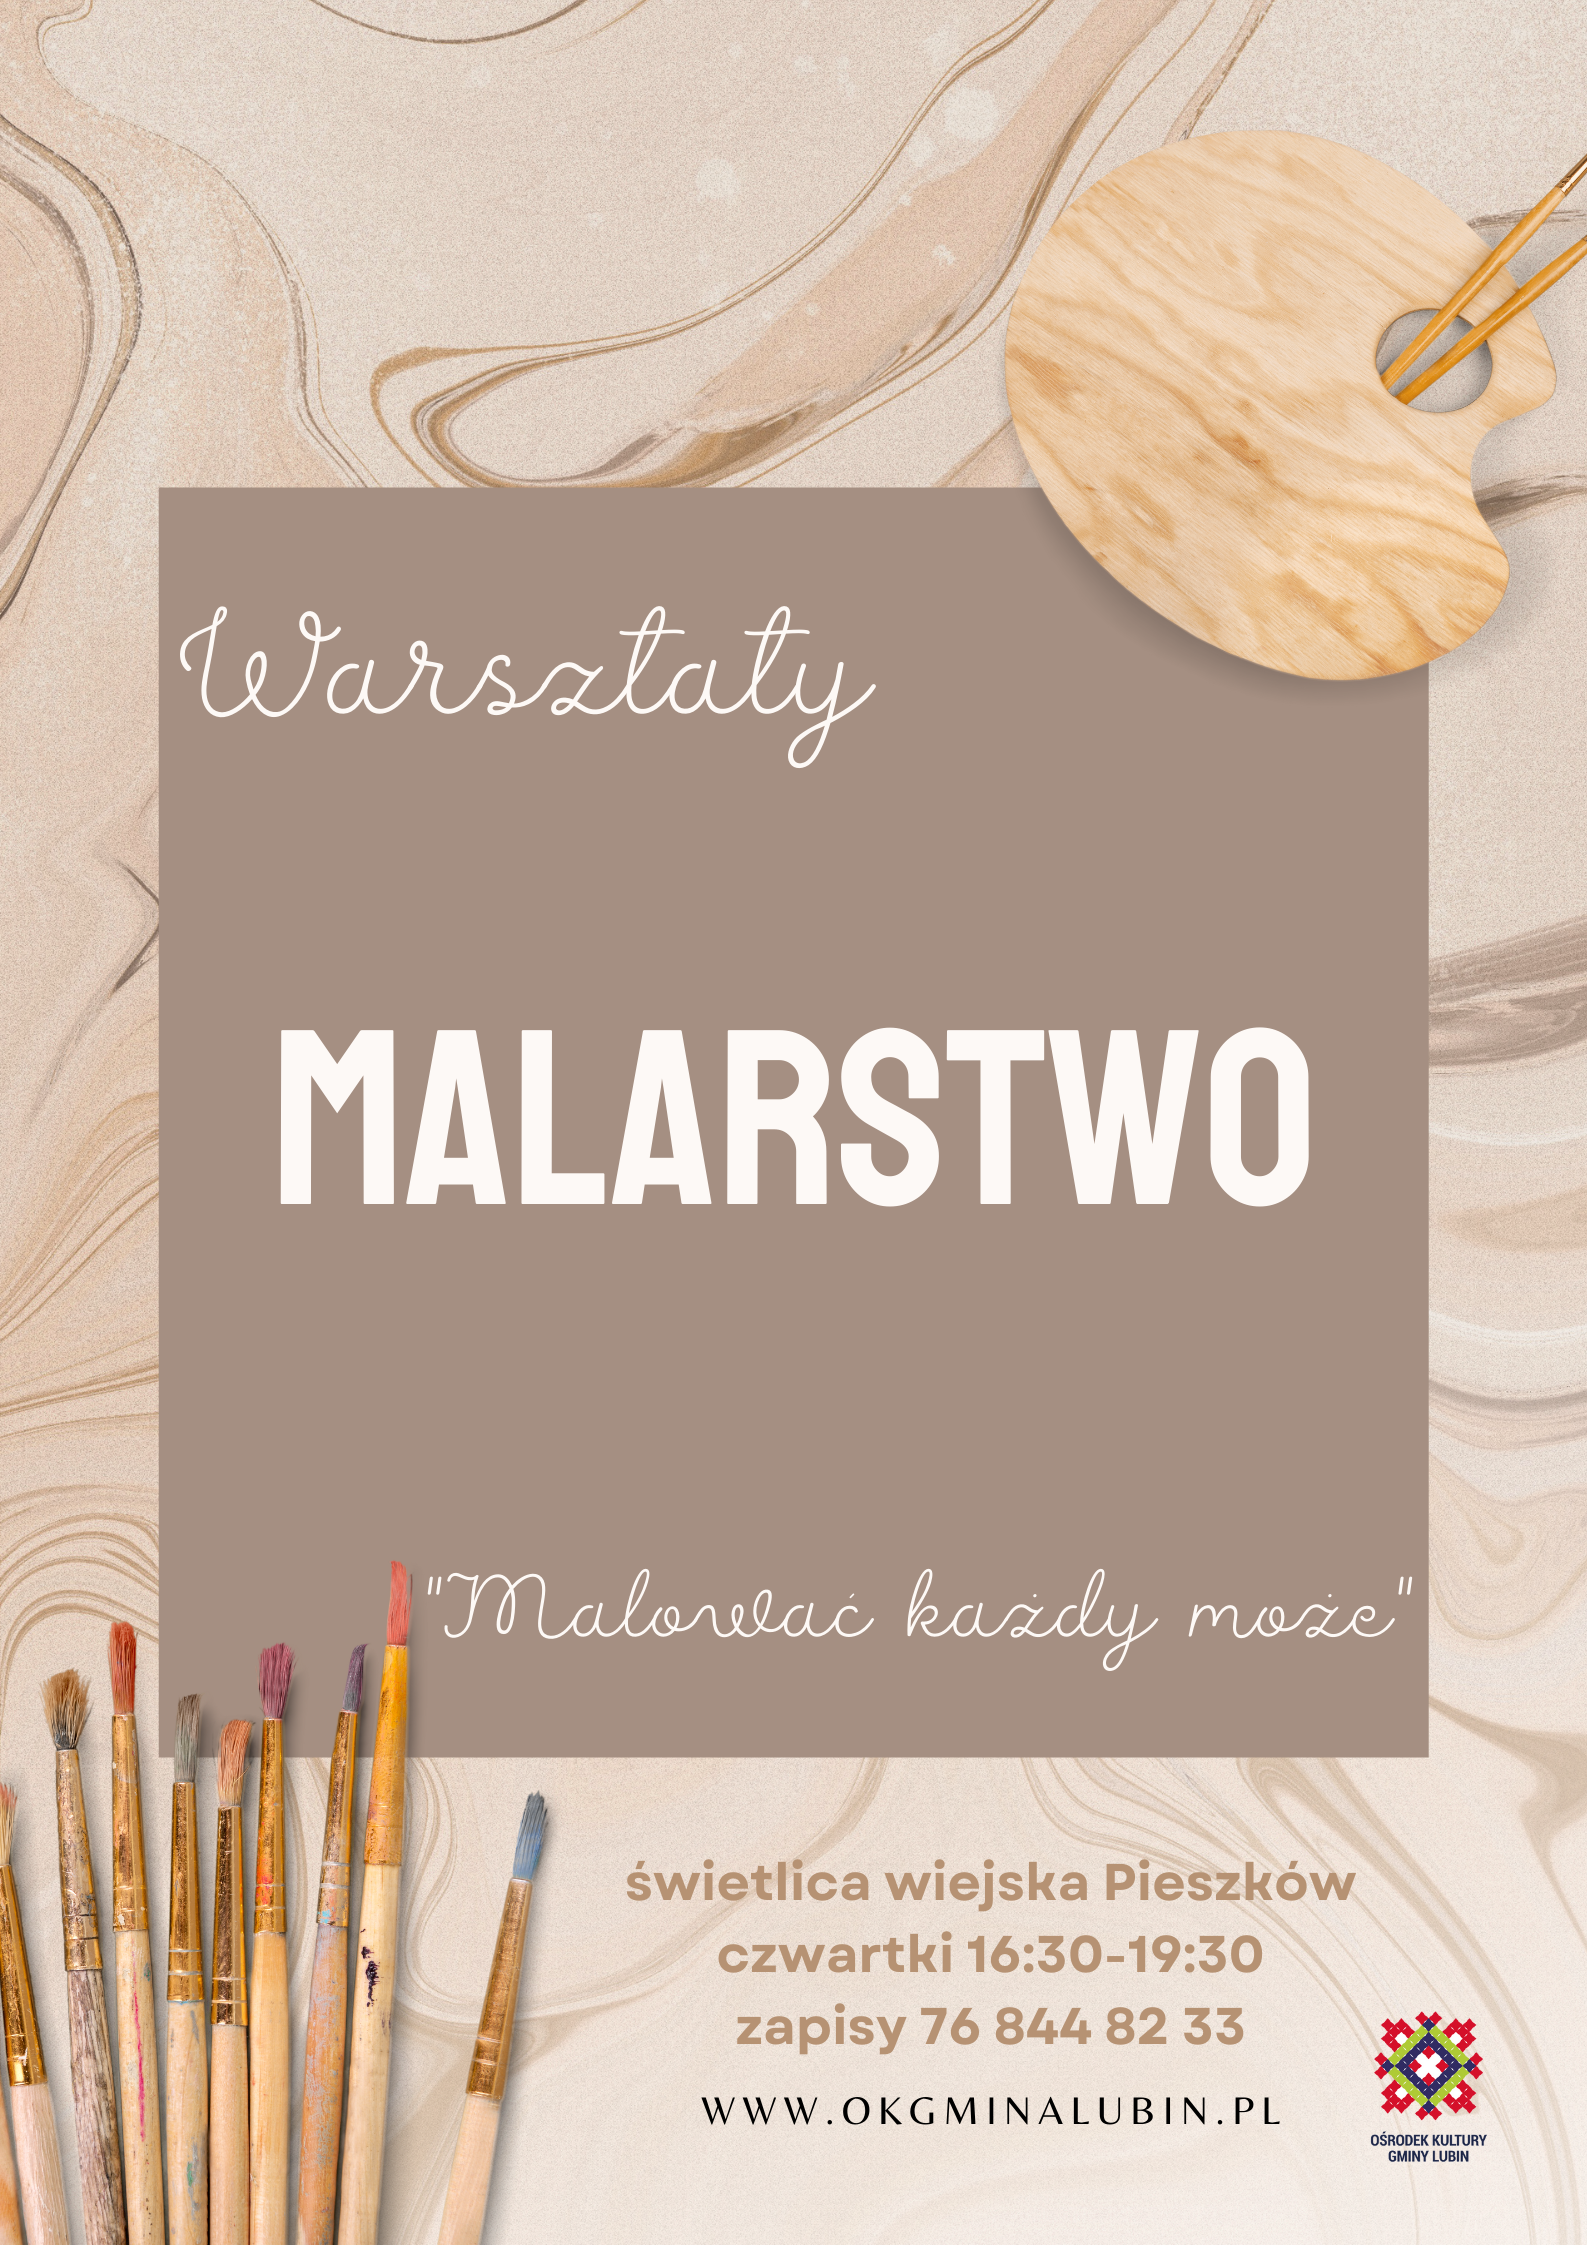 warsztaty malarskie w Pieszkowie pierwsze zajecia 10 marca w godzinach 16:30-19:30 zapisy 76 844 82 33 lub przez messenger